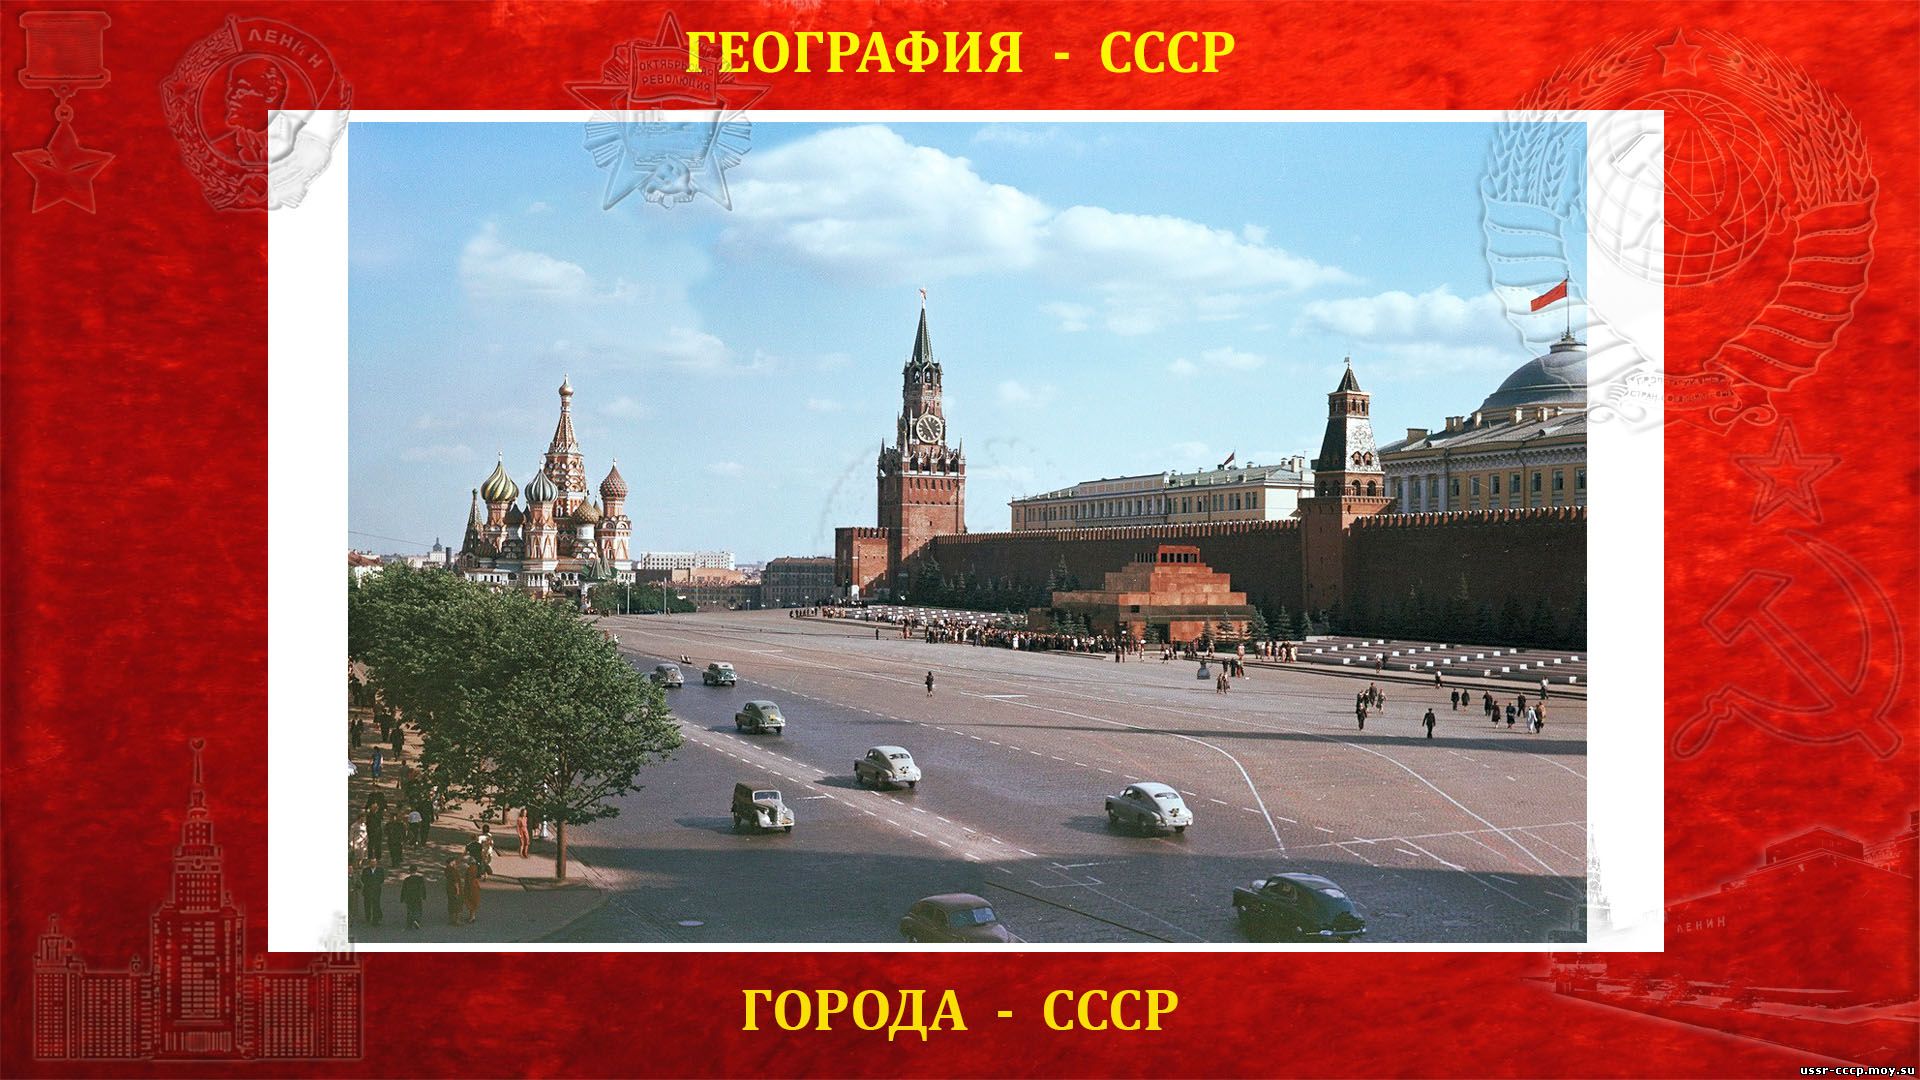 Московский Кремль — местопребывание высших руководителей СССР и органов государственной власти СССР.